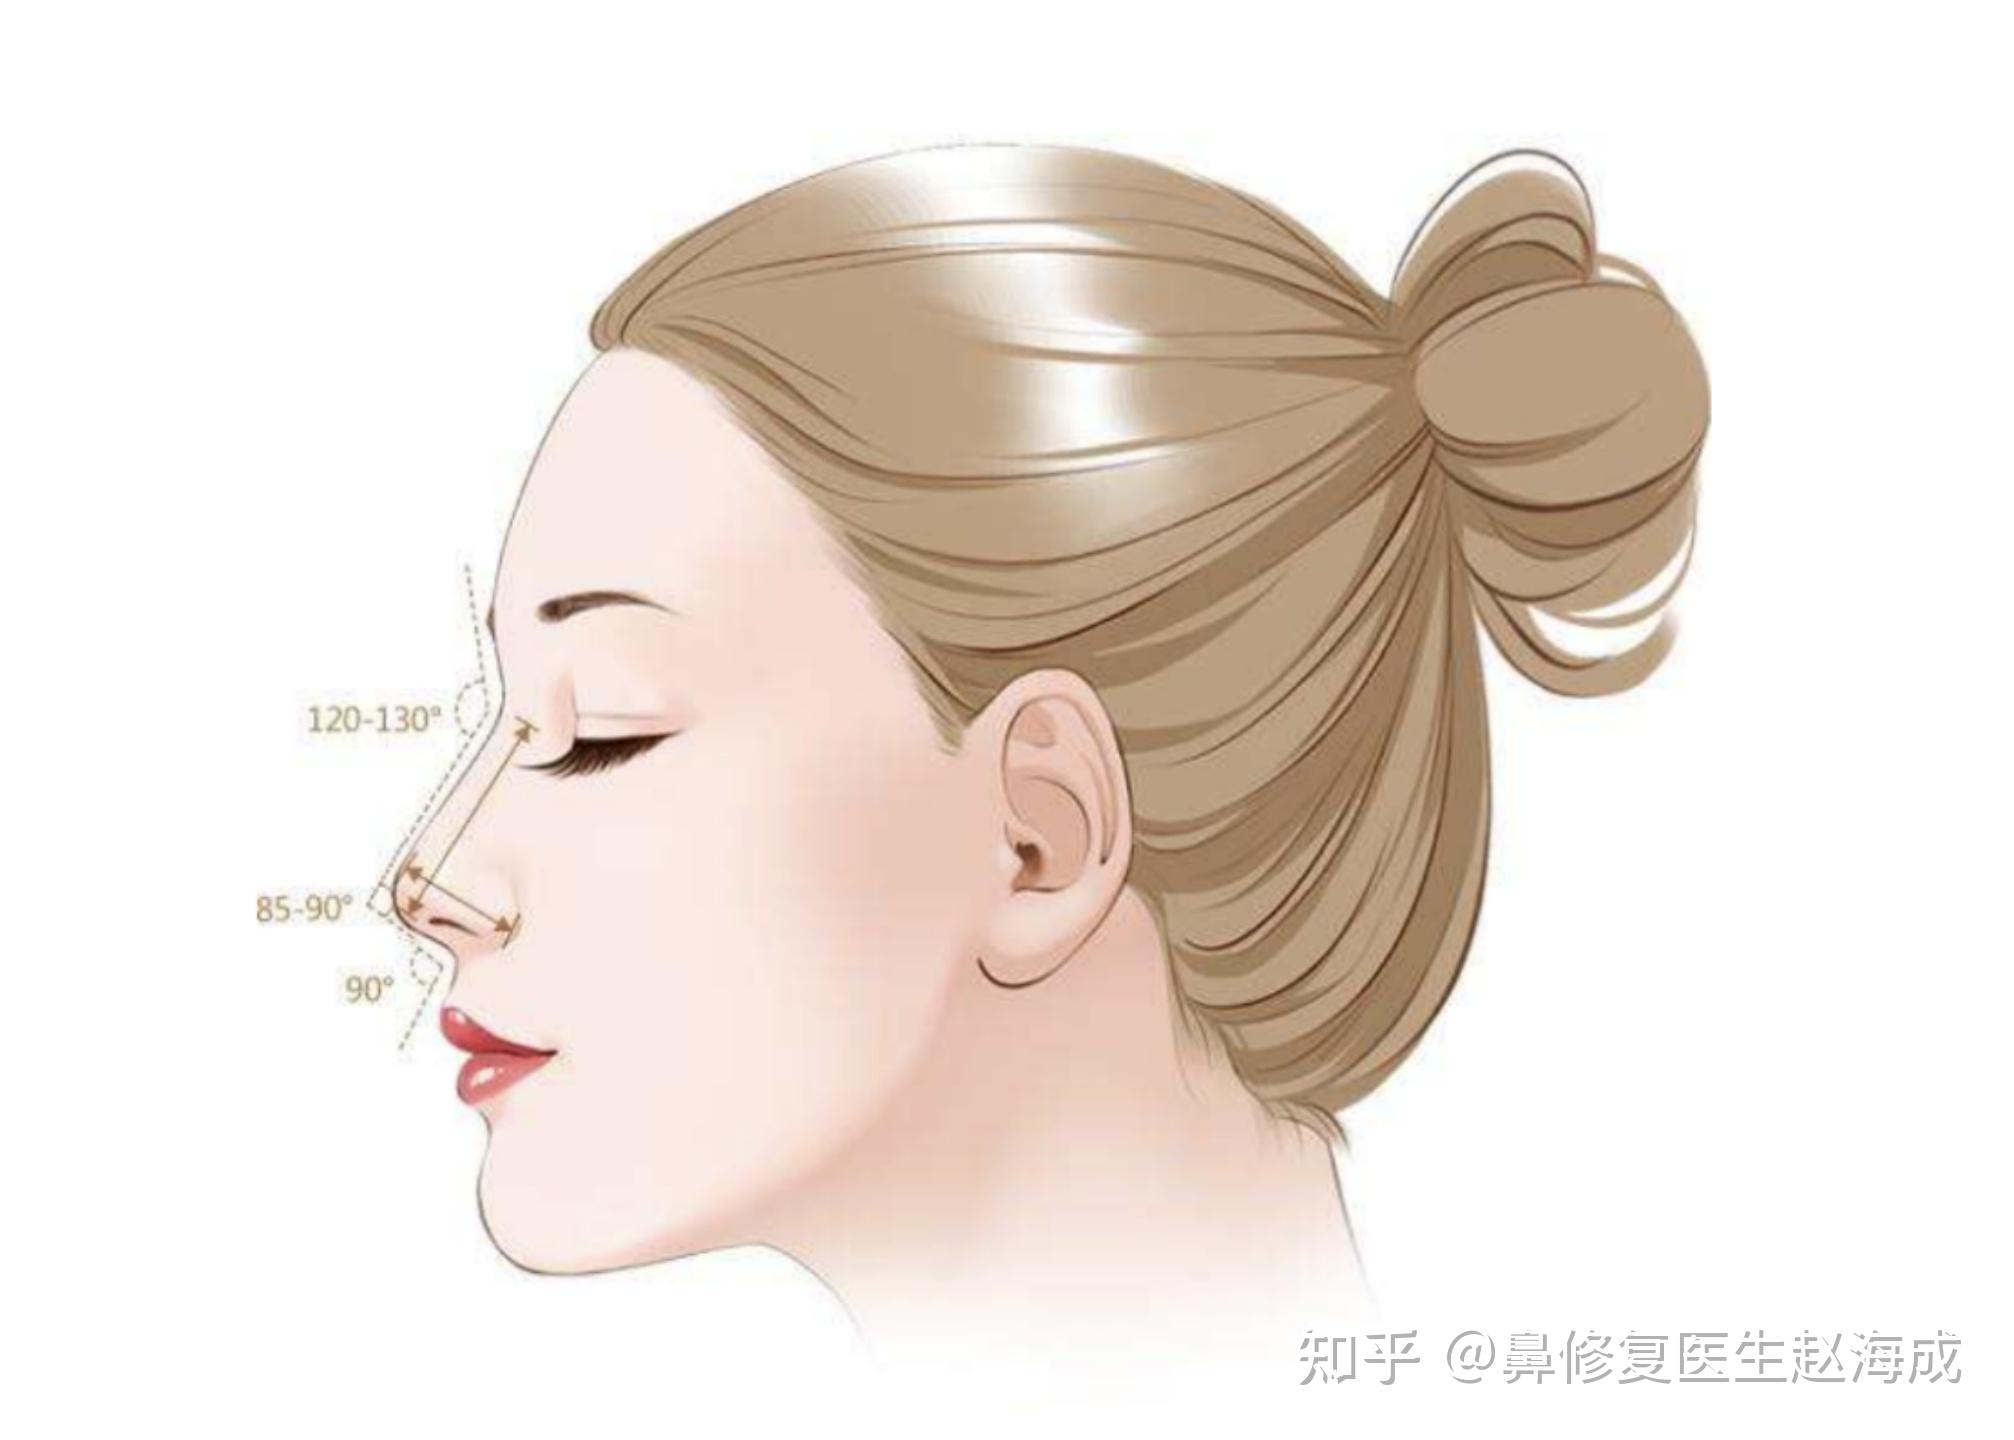 鼻整形的美学标准、常见手术项目、方法及术后护理 - 知乎